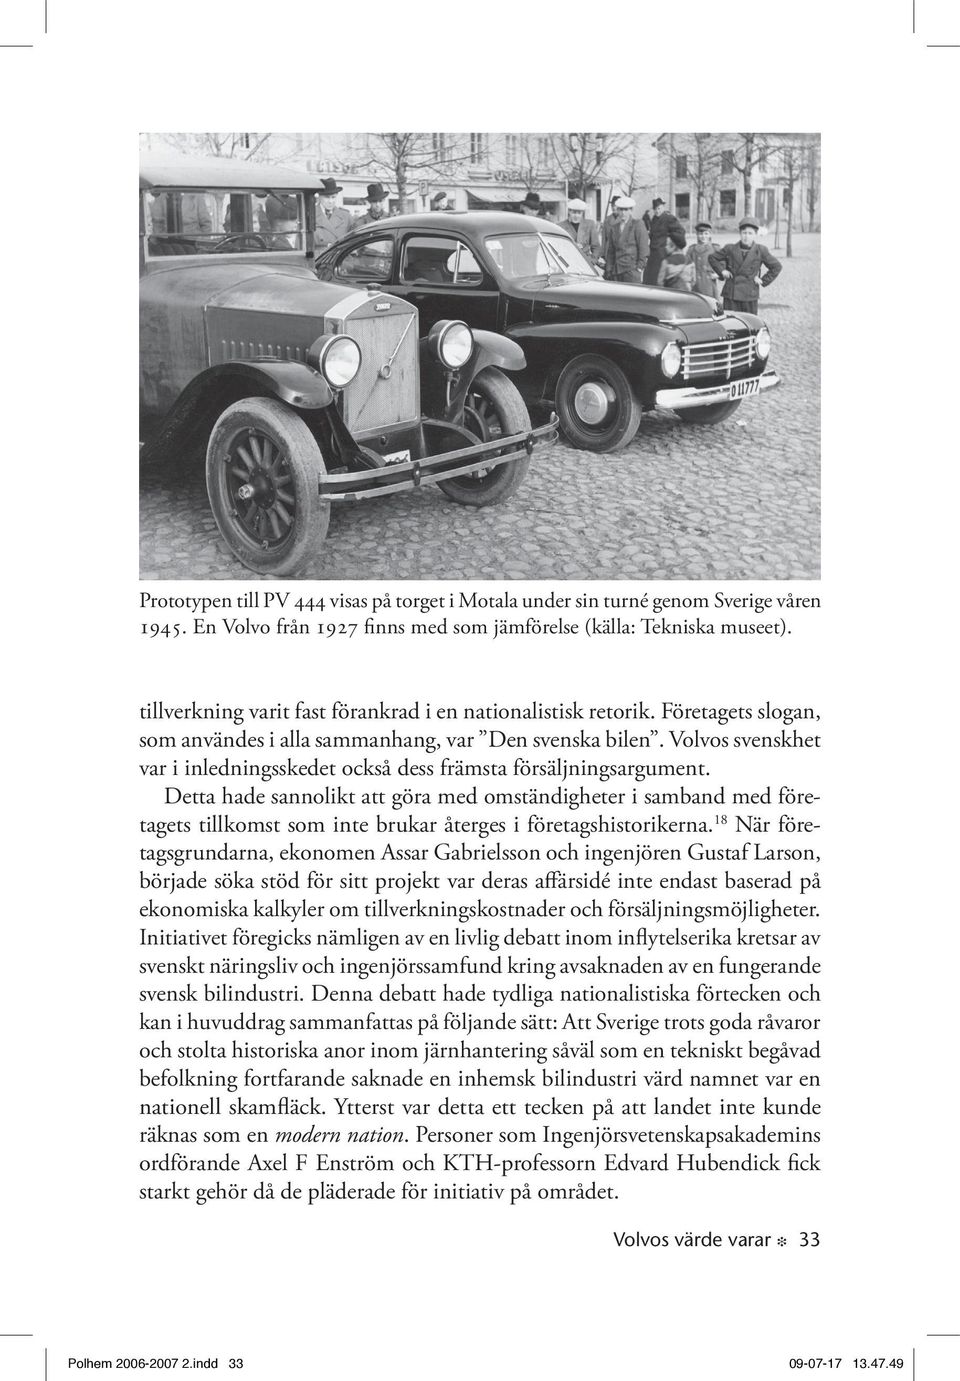 Volvos svenskhet var i inledningsskedet också dess främsta försäljningsargument.